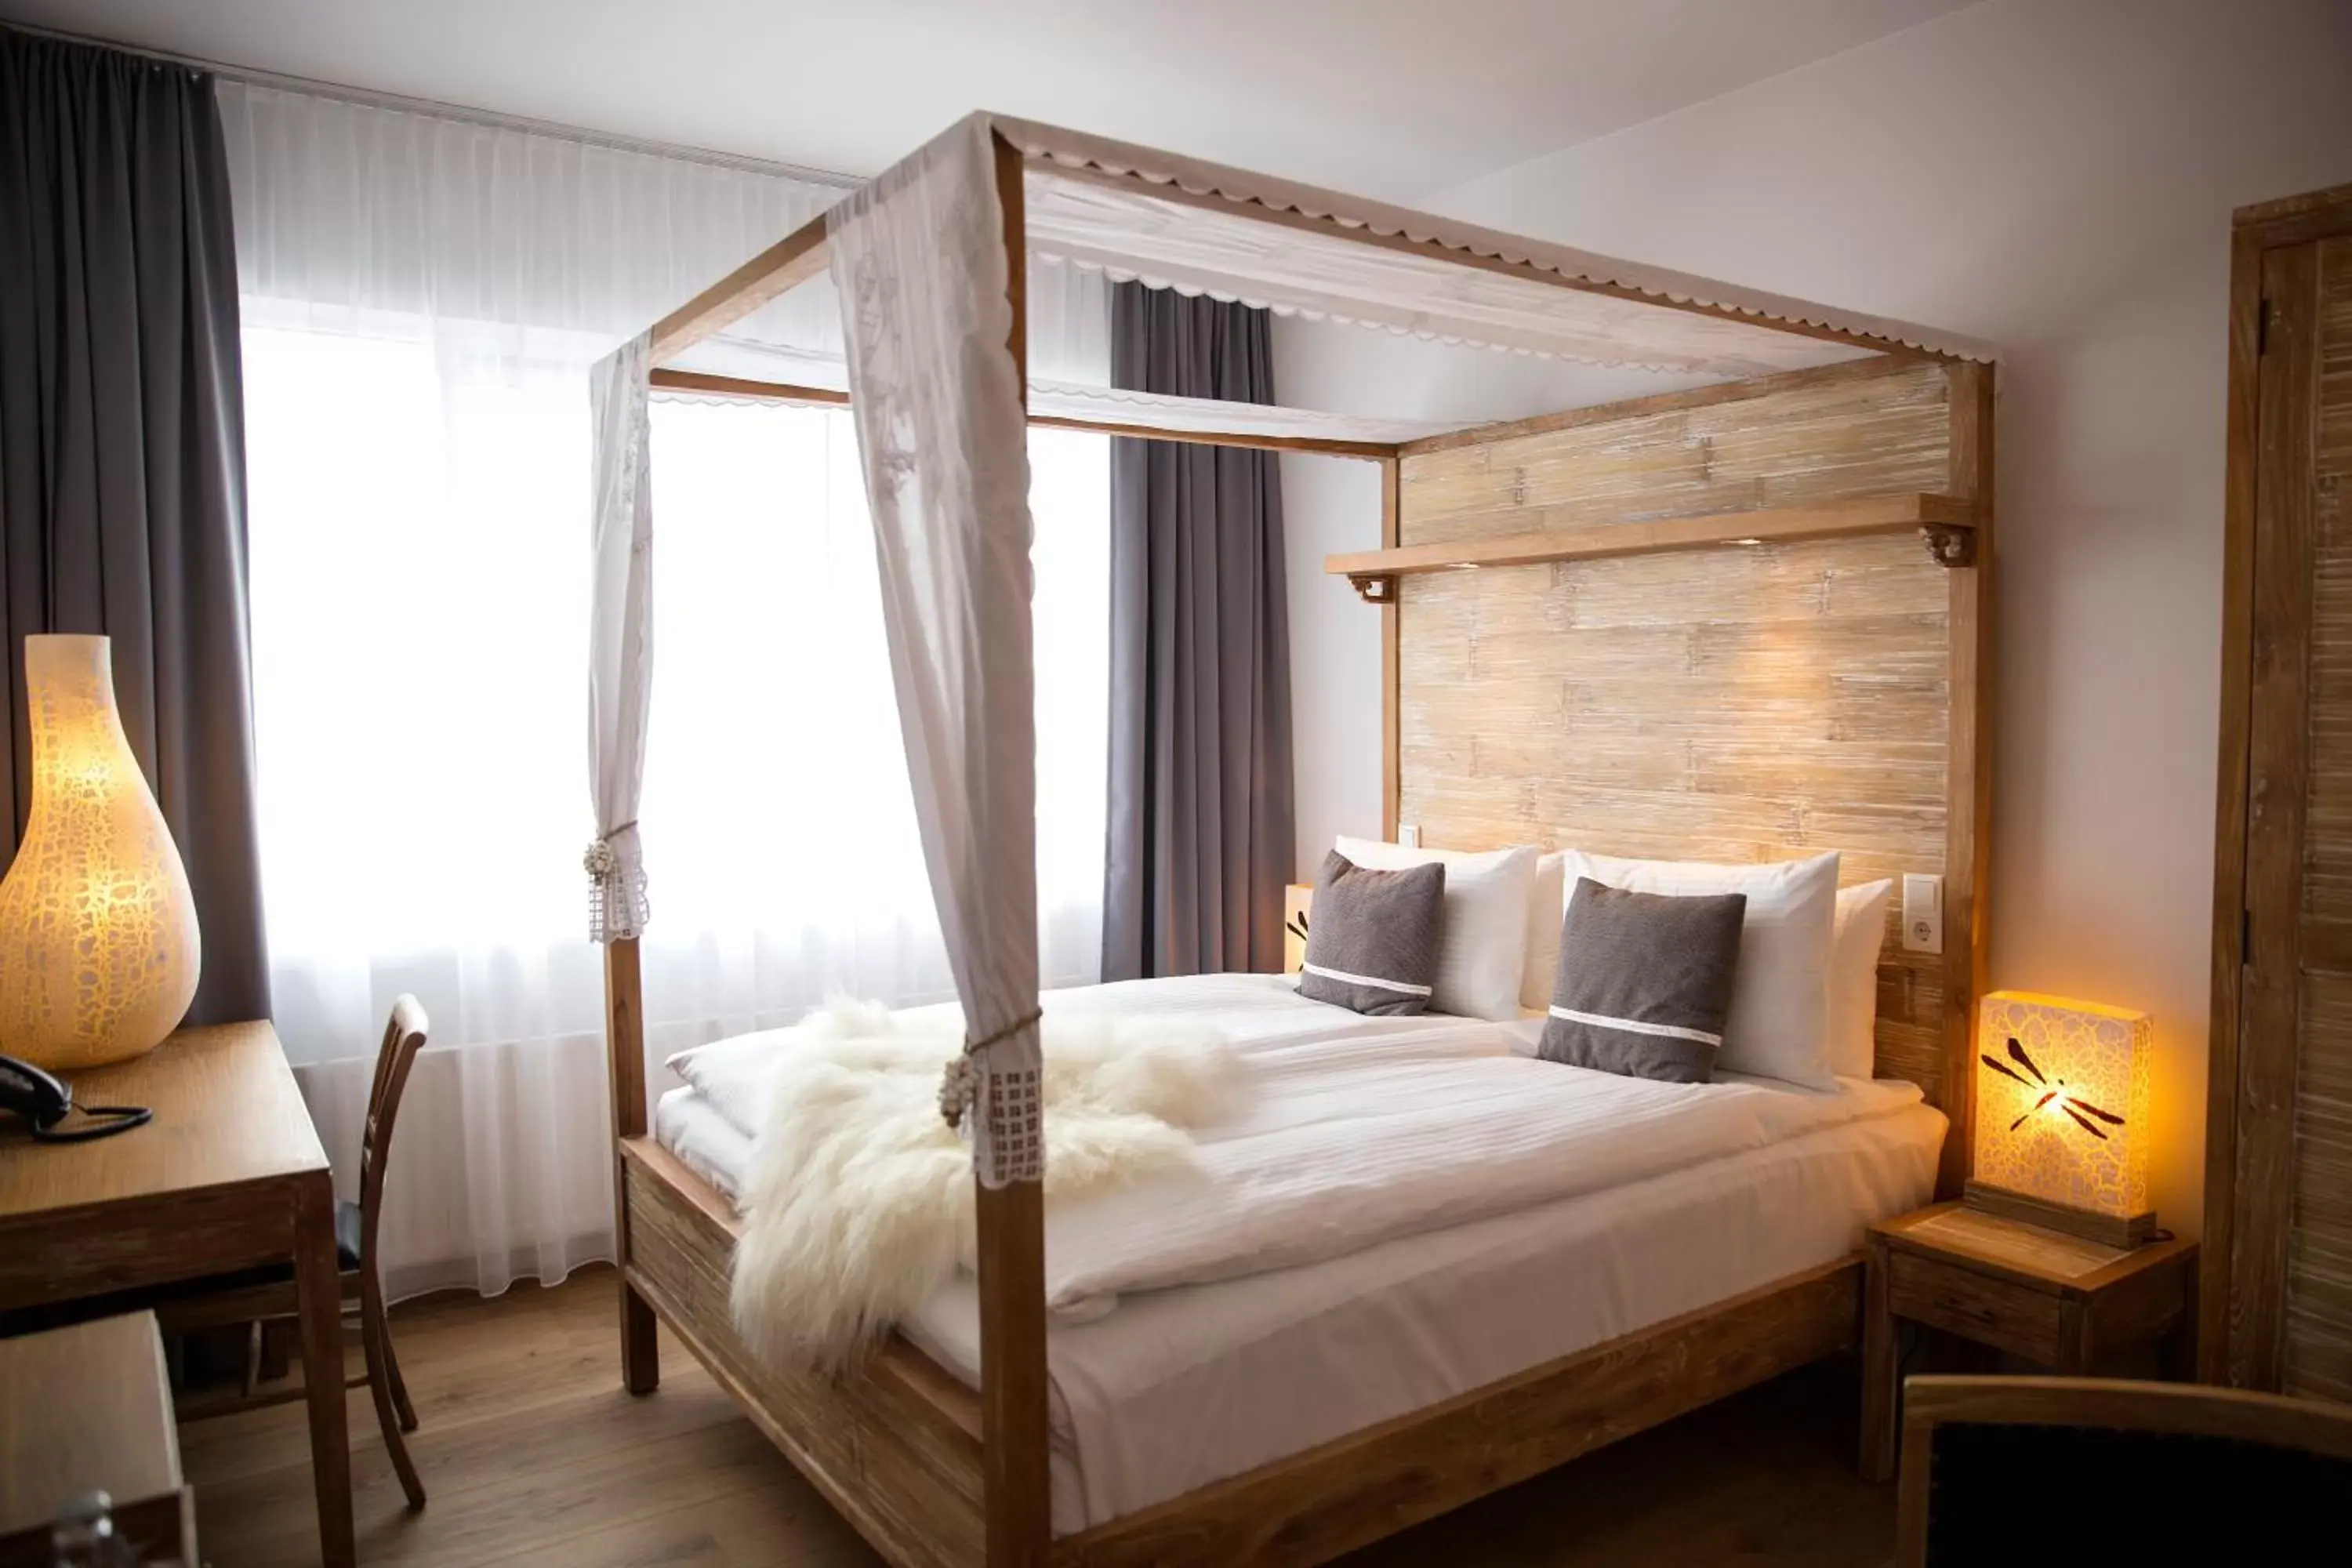 Bed, Room Photo in Eyja Guldsmeden Hotel